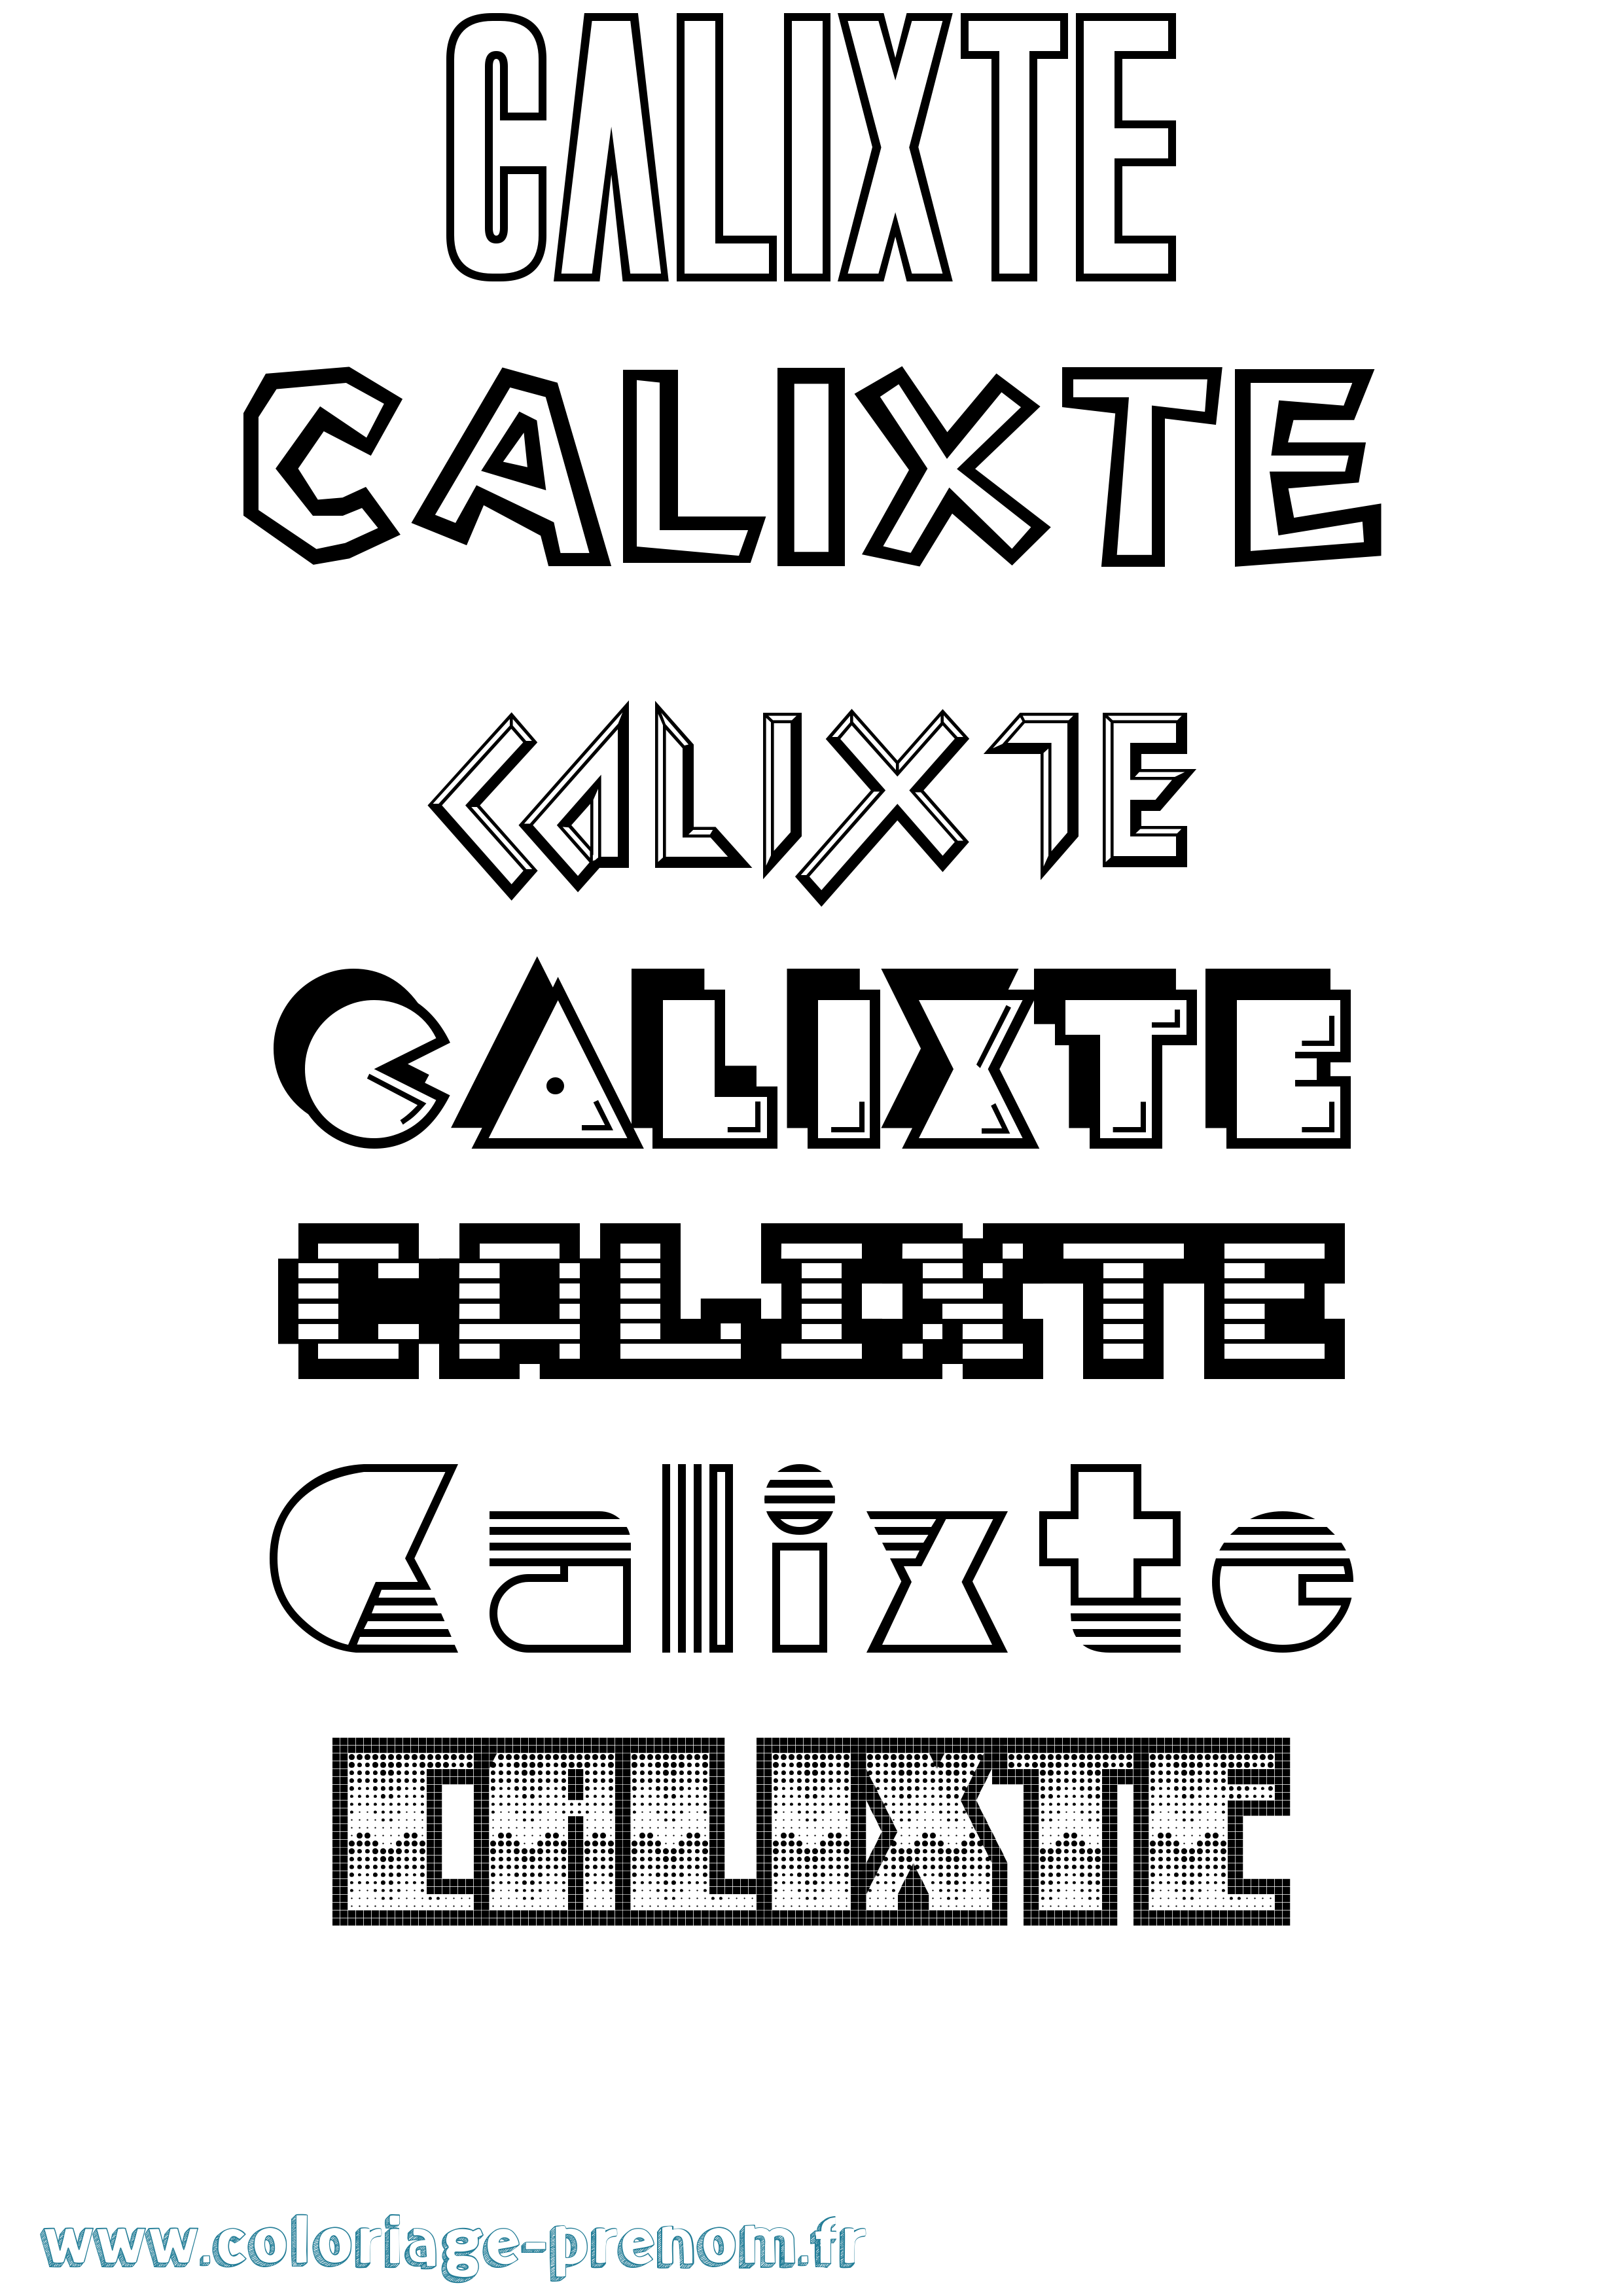 Coloriage prénom Calixte